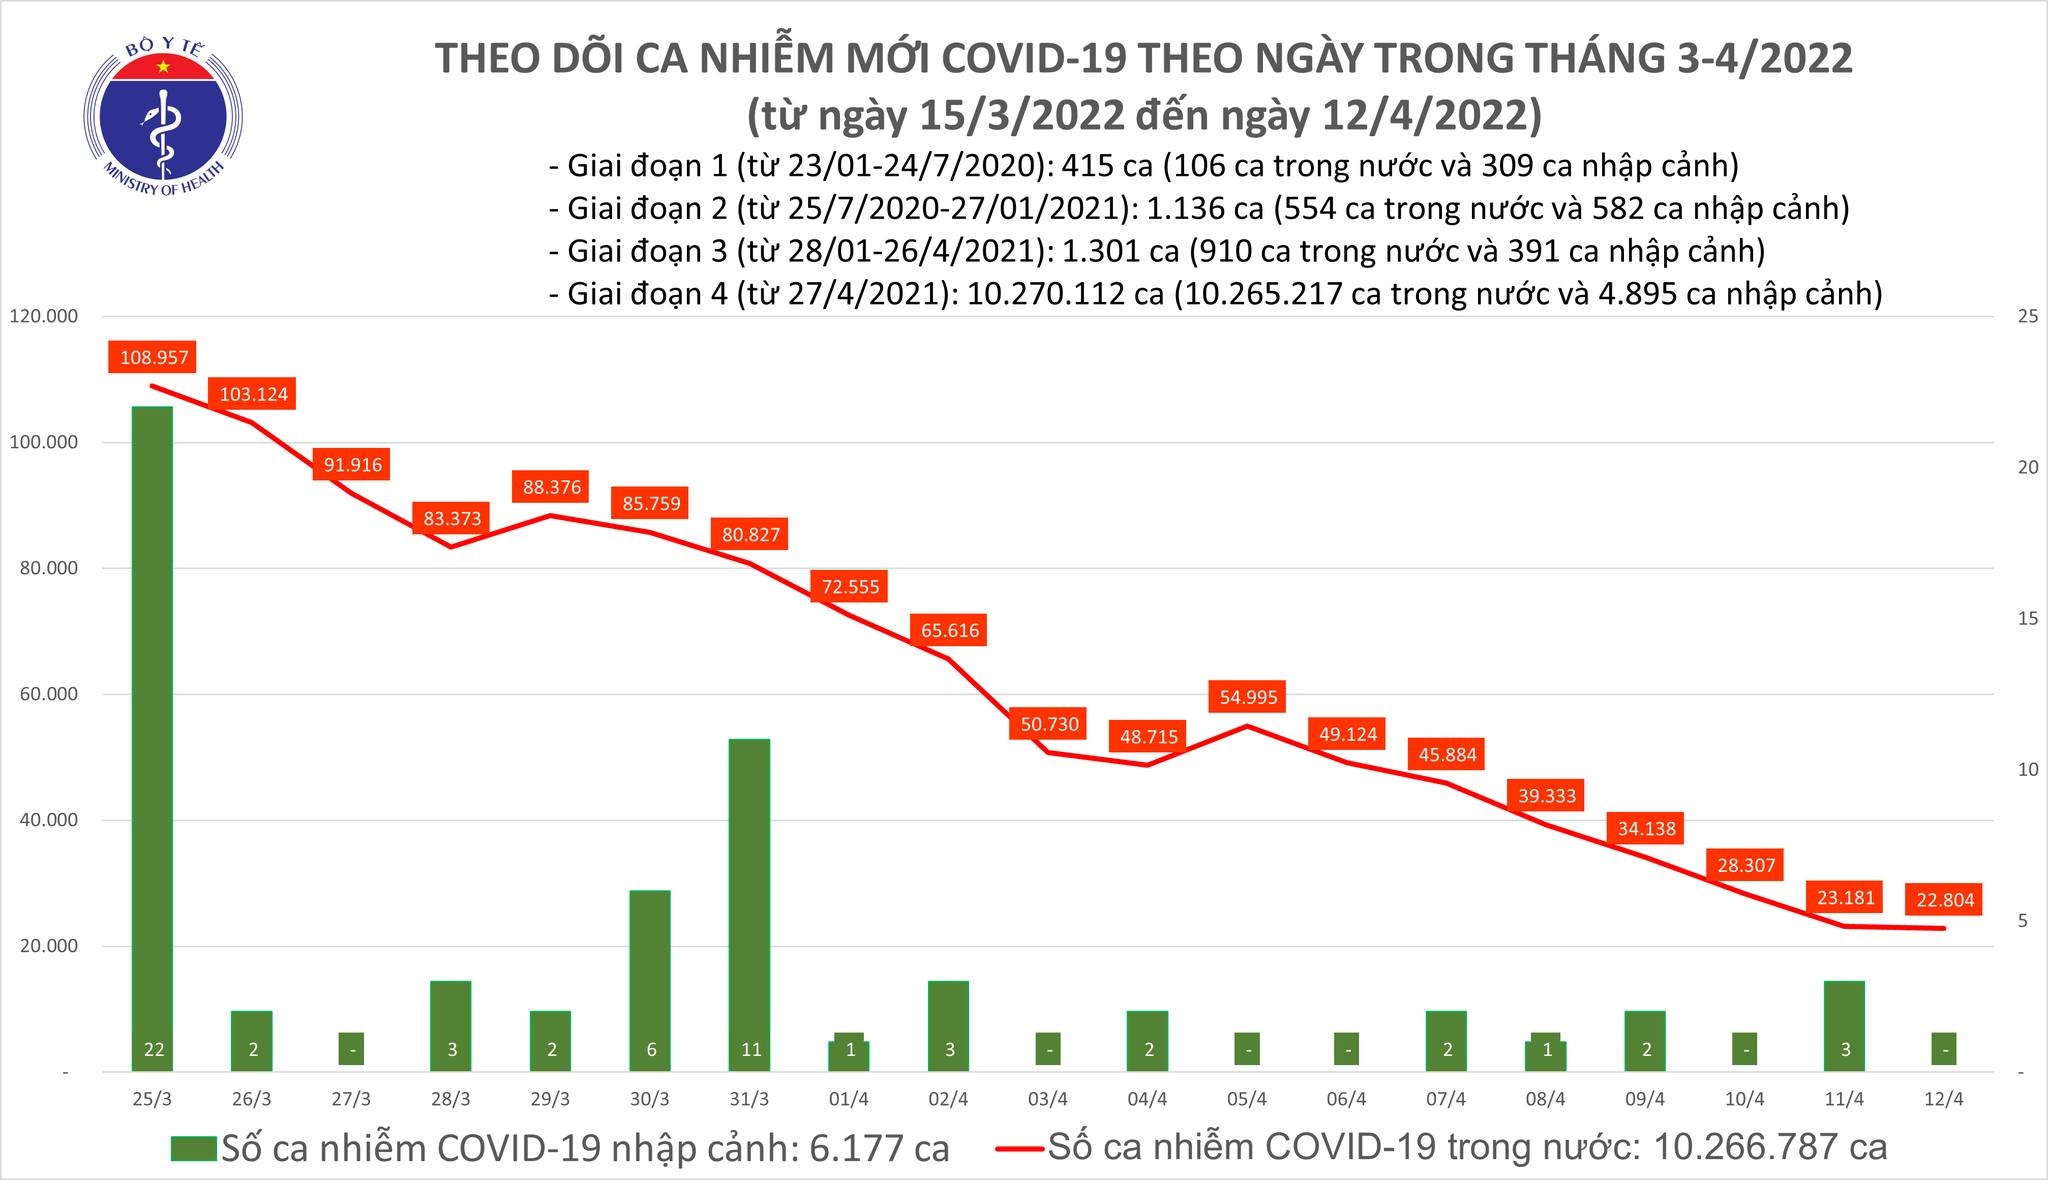 Việt Nam ghi nhận 22.804 ca mắc mới COVID-19 trong ngày 12/4